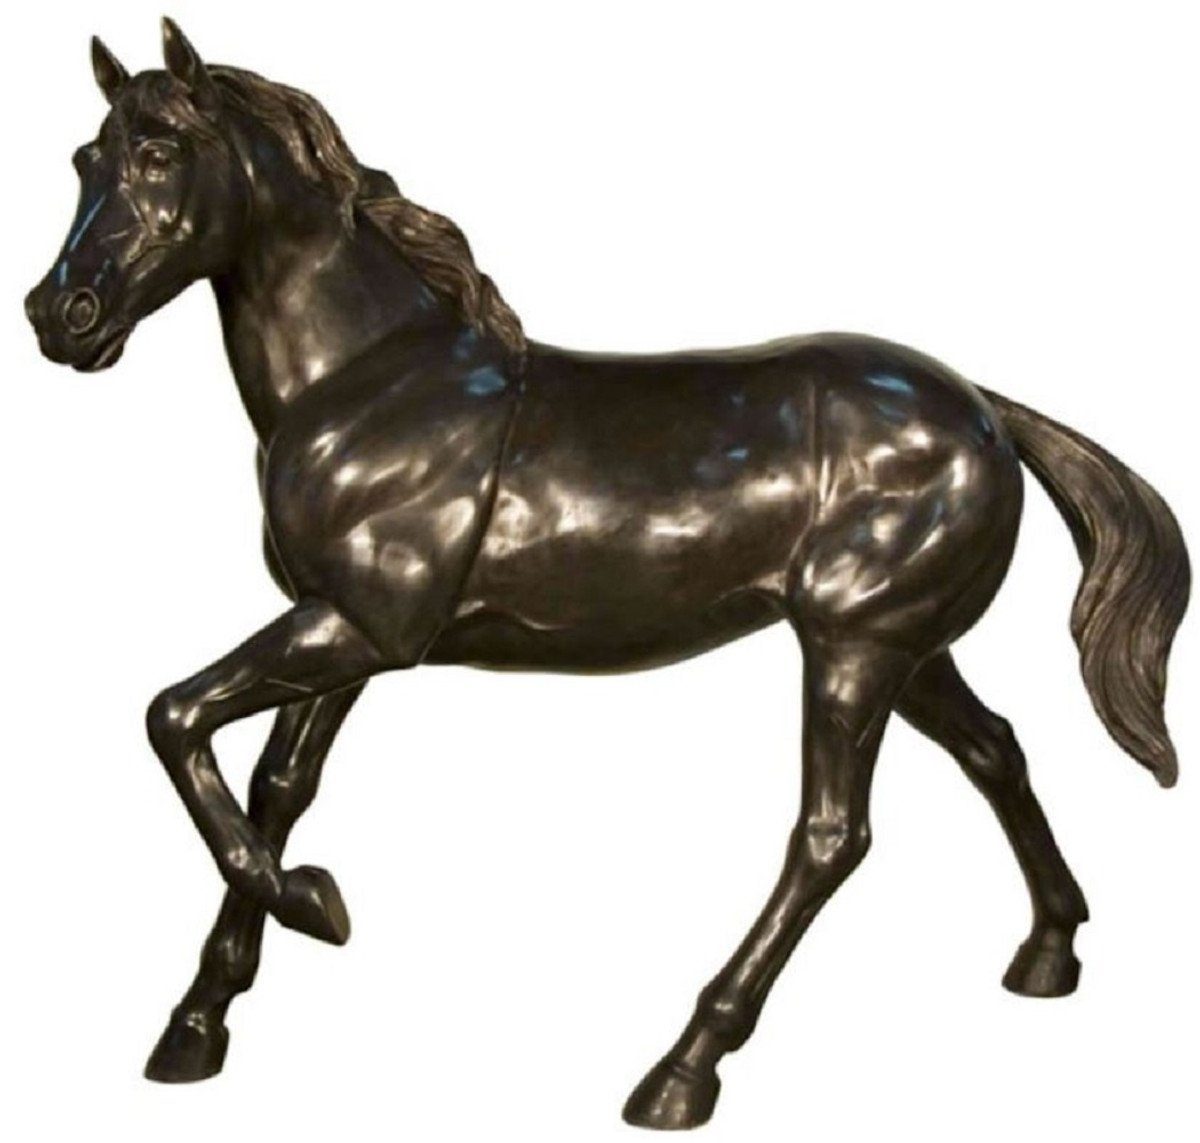 Garten Luxus Bronze Deko 64 Skulptur XXL Padrino - Deko Riesiege Bronze H. XXL 157 cm Casa - Figur - Garten Pferd x - - Bronze Skulptur Lebensgroße 188 Skulptur Luxus Tierfigur x Skulptur